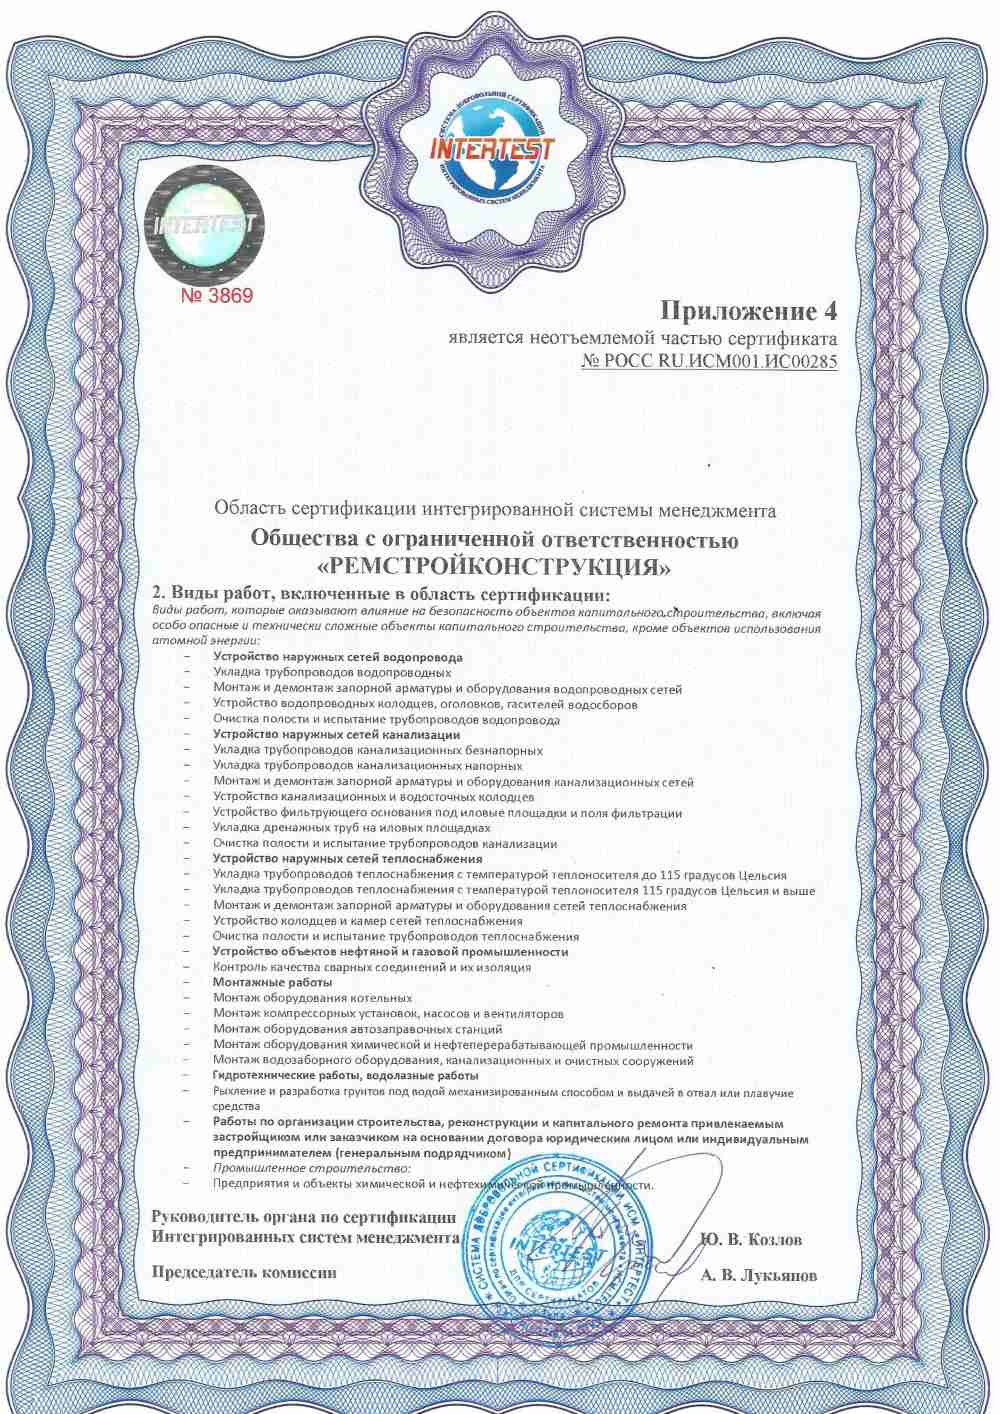 Приложение 4 к сертификату ISO 9001 ИСМ